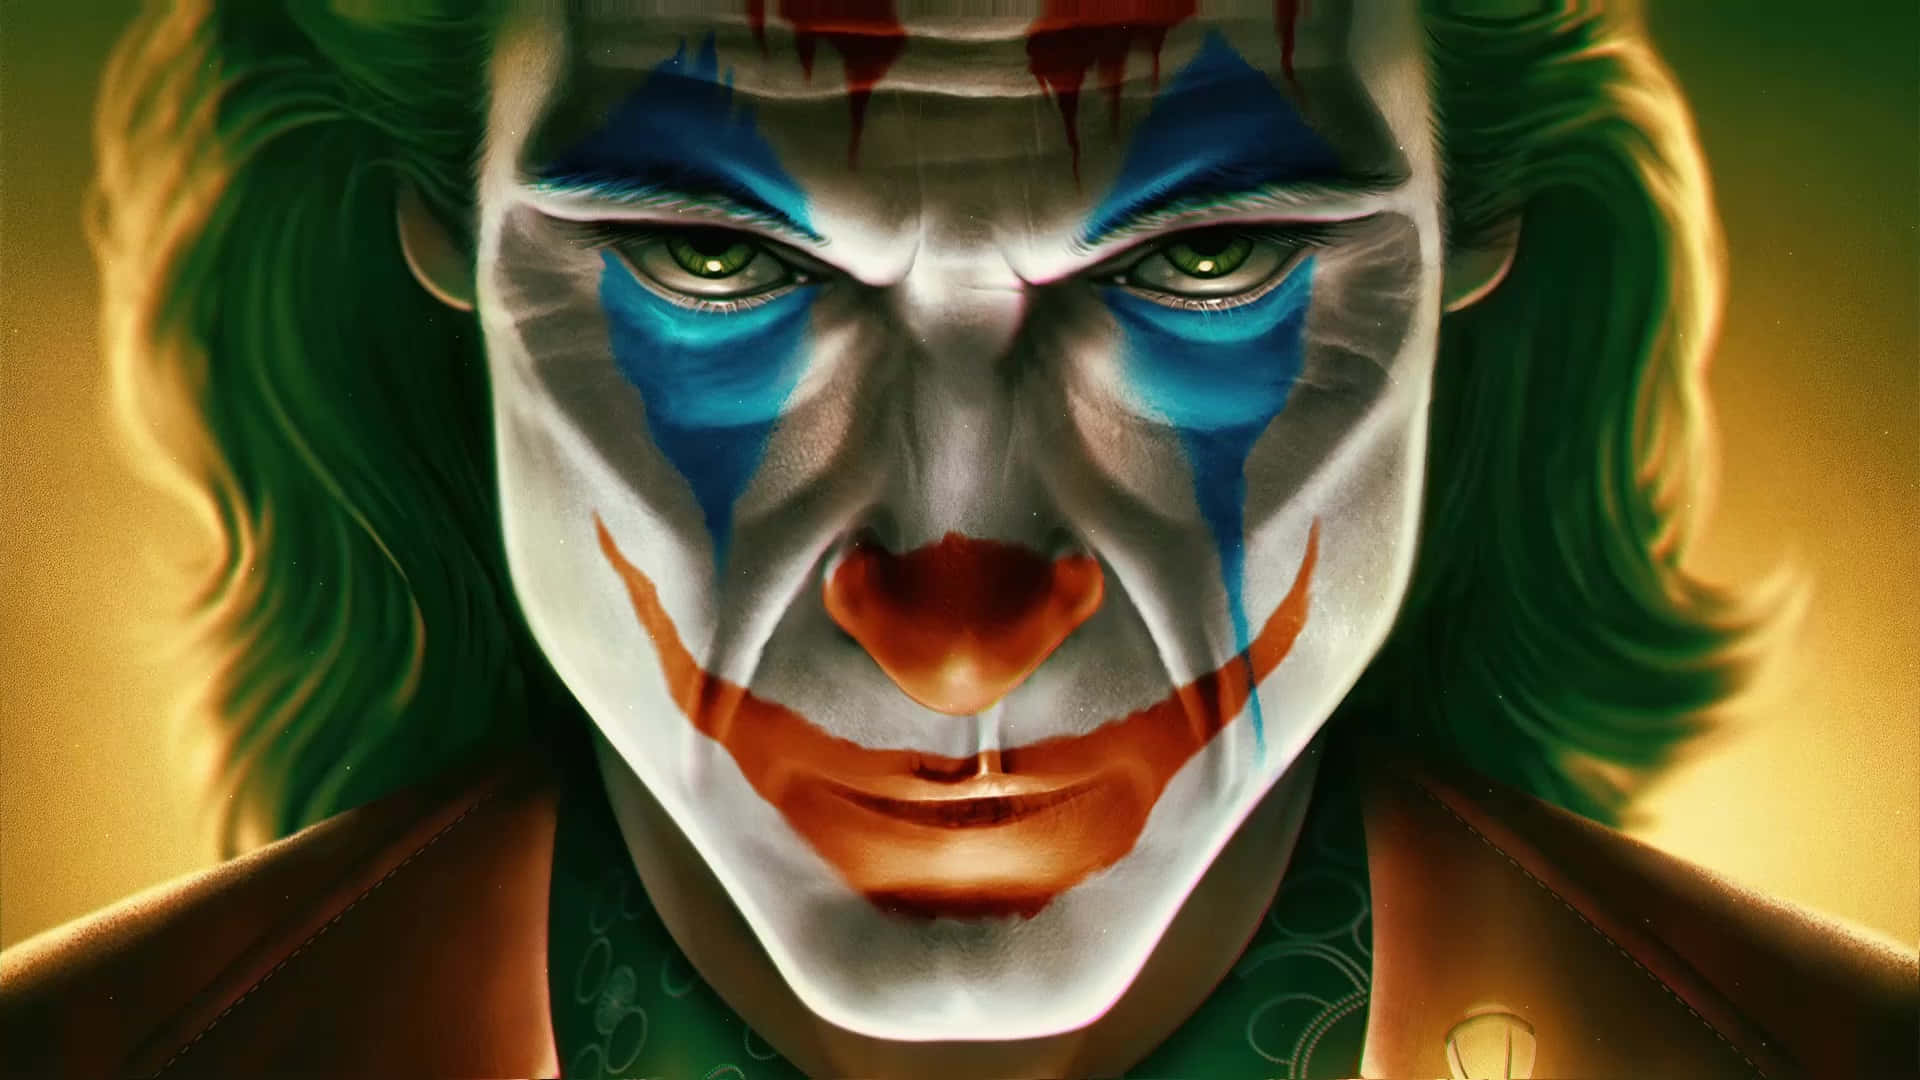 Arthur Fleck in Joker Costume Wallpaper